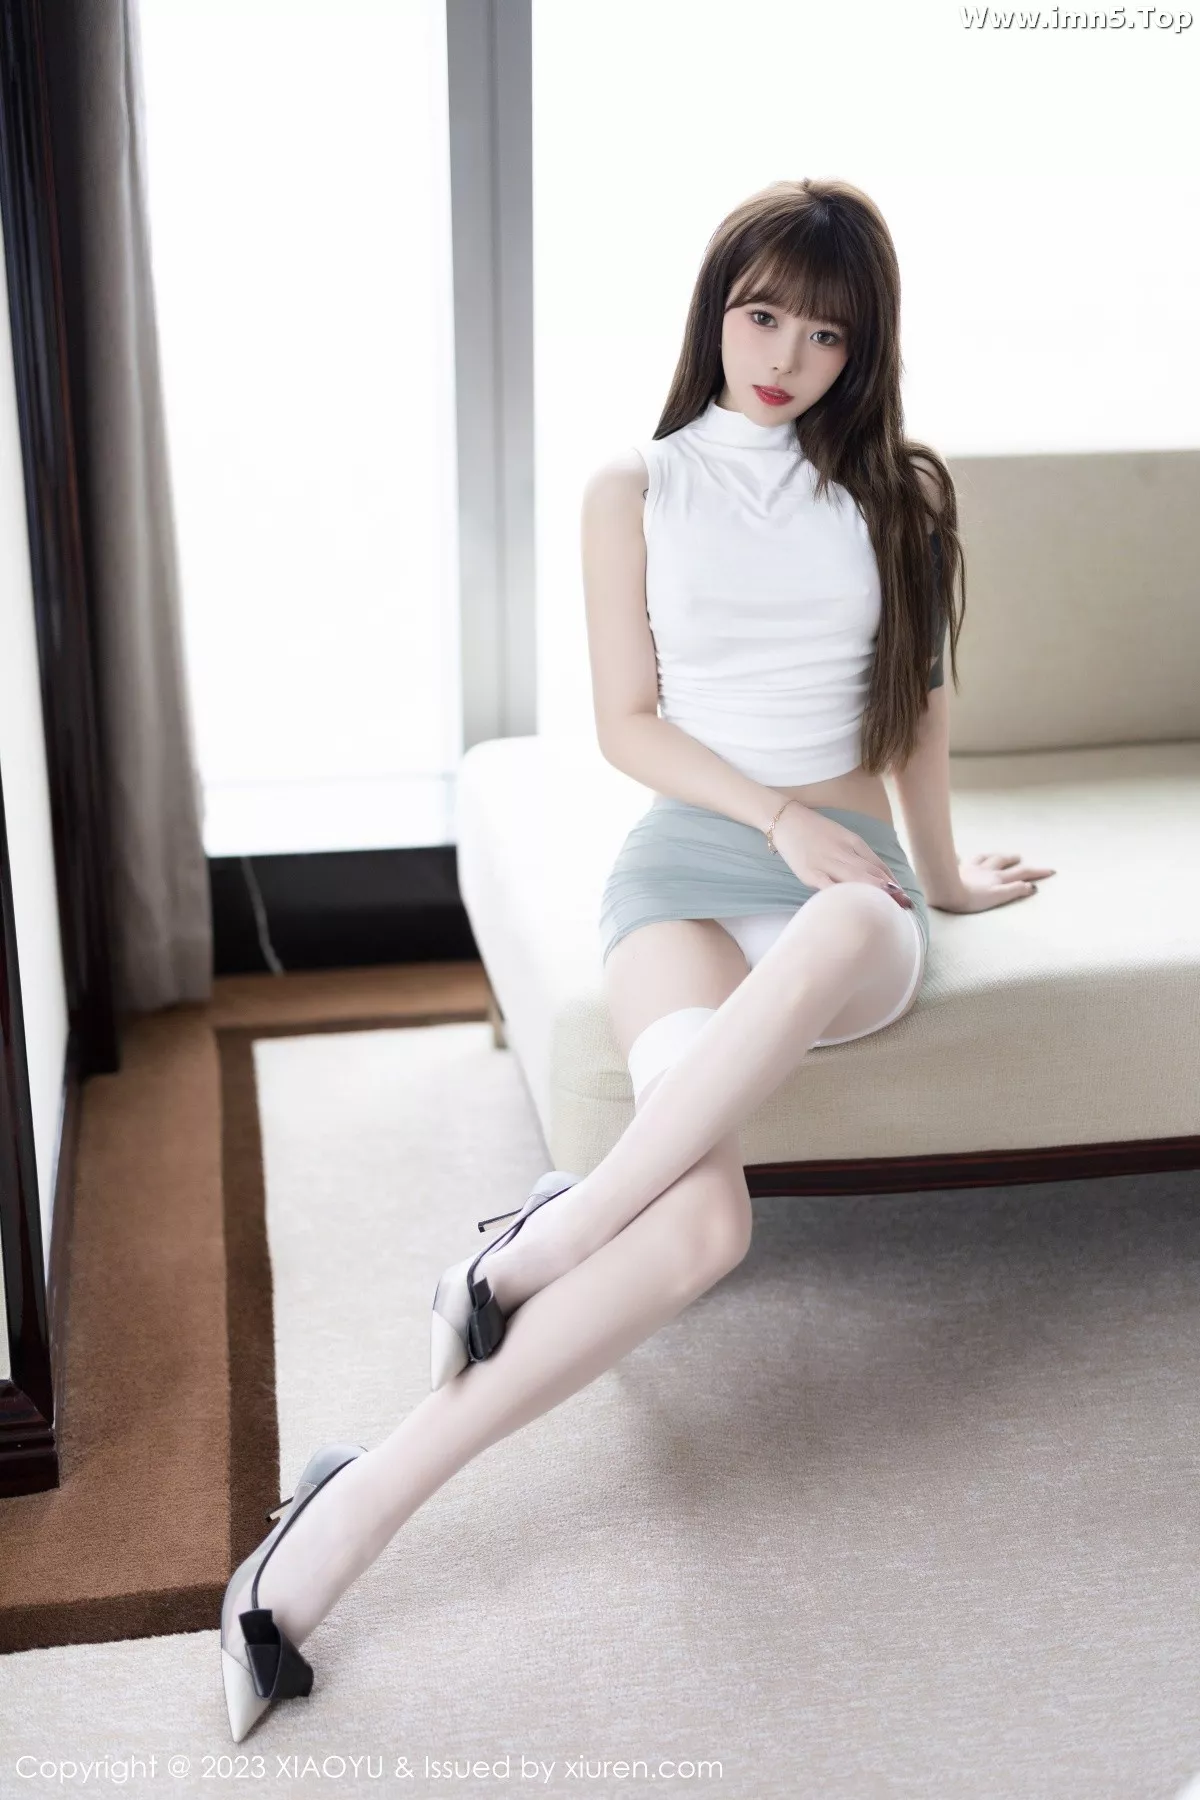 [XiaoYu画语界]Vol.949_模特奶瓶性感白色轻透收身上衣配蓝色短裙秀曼妙身姿迷人写真90P